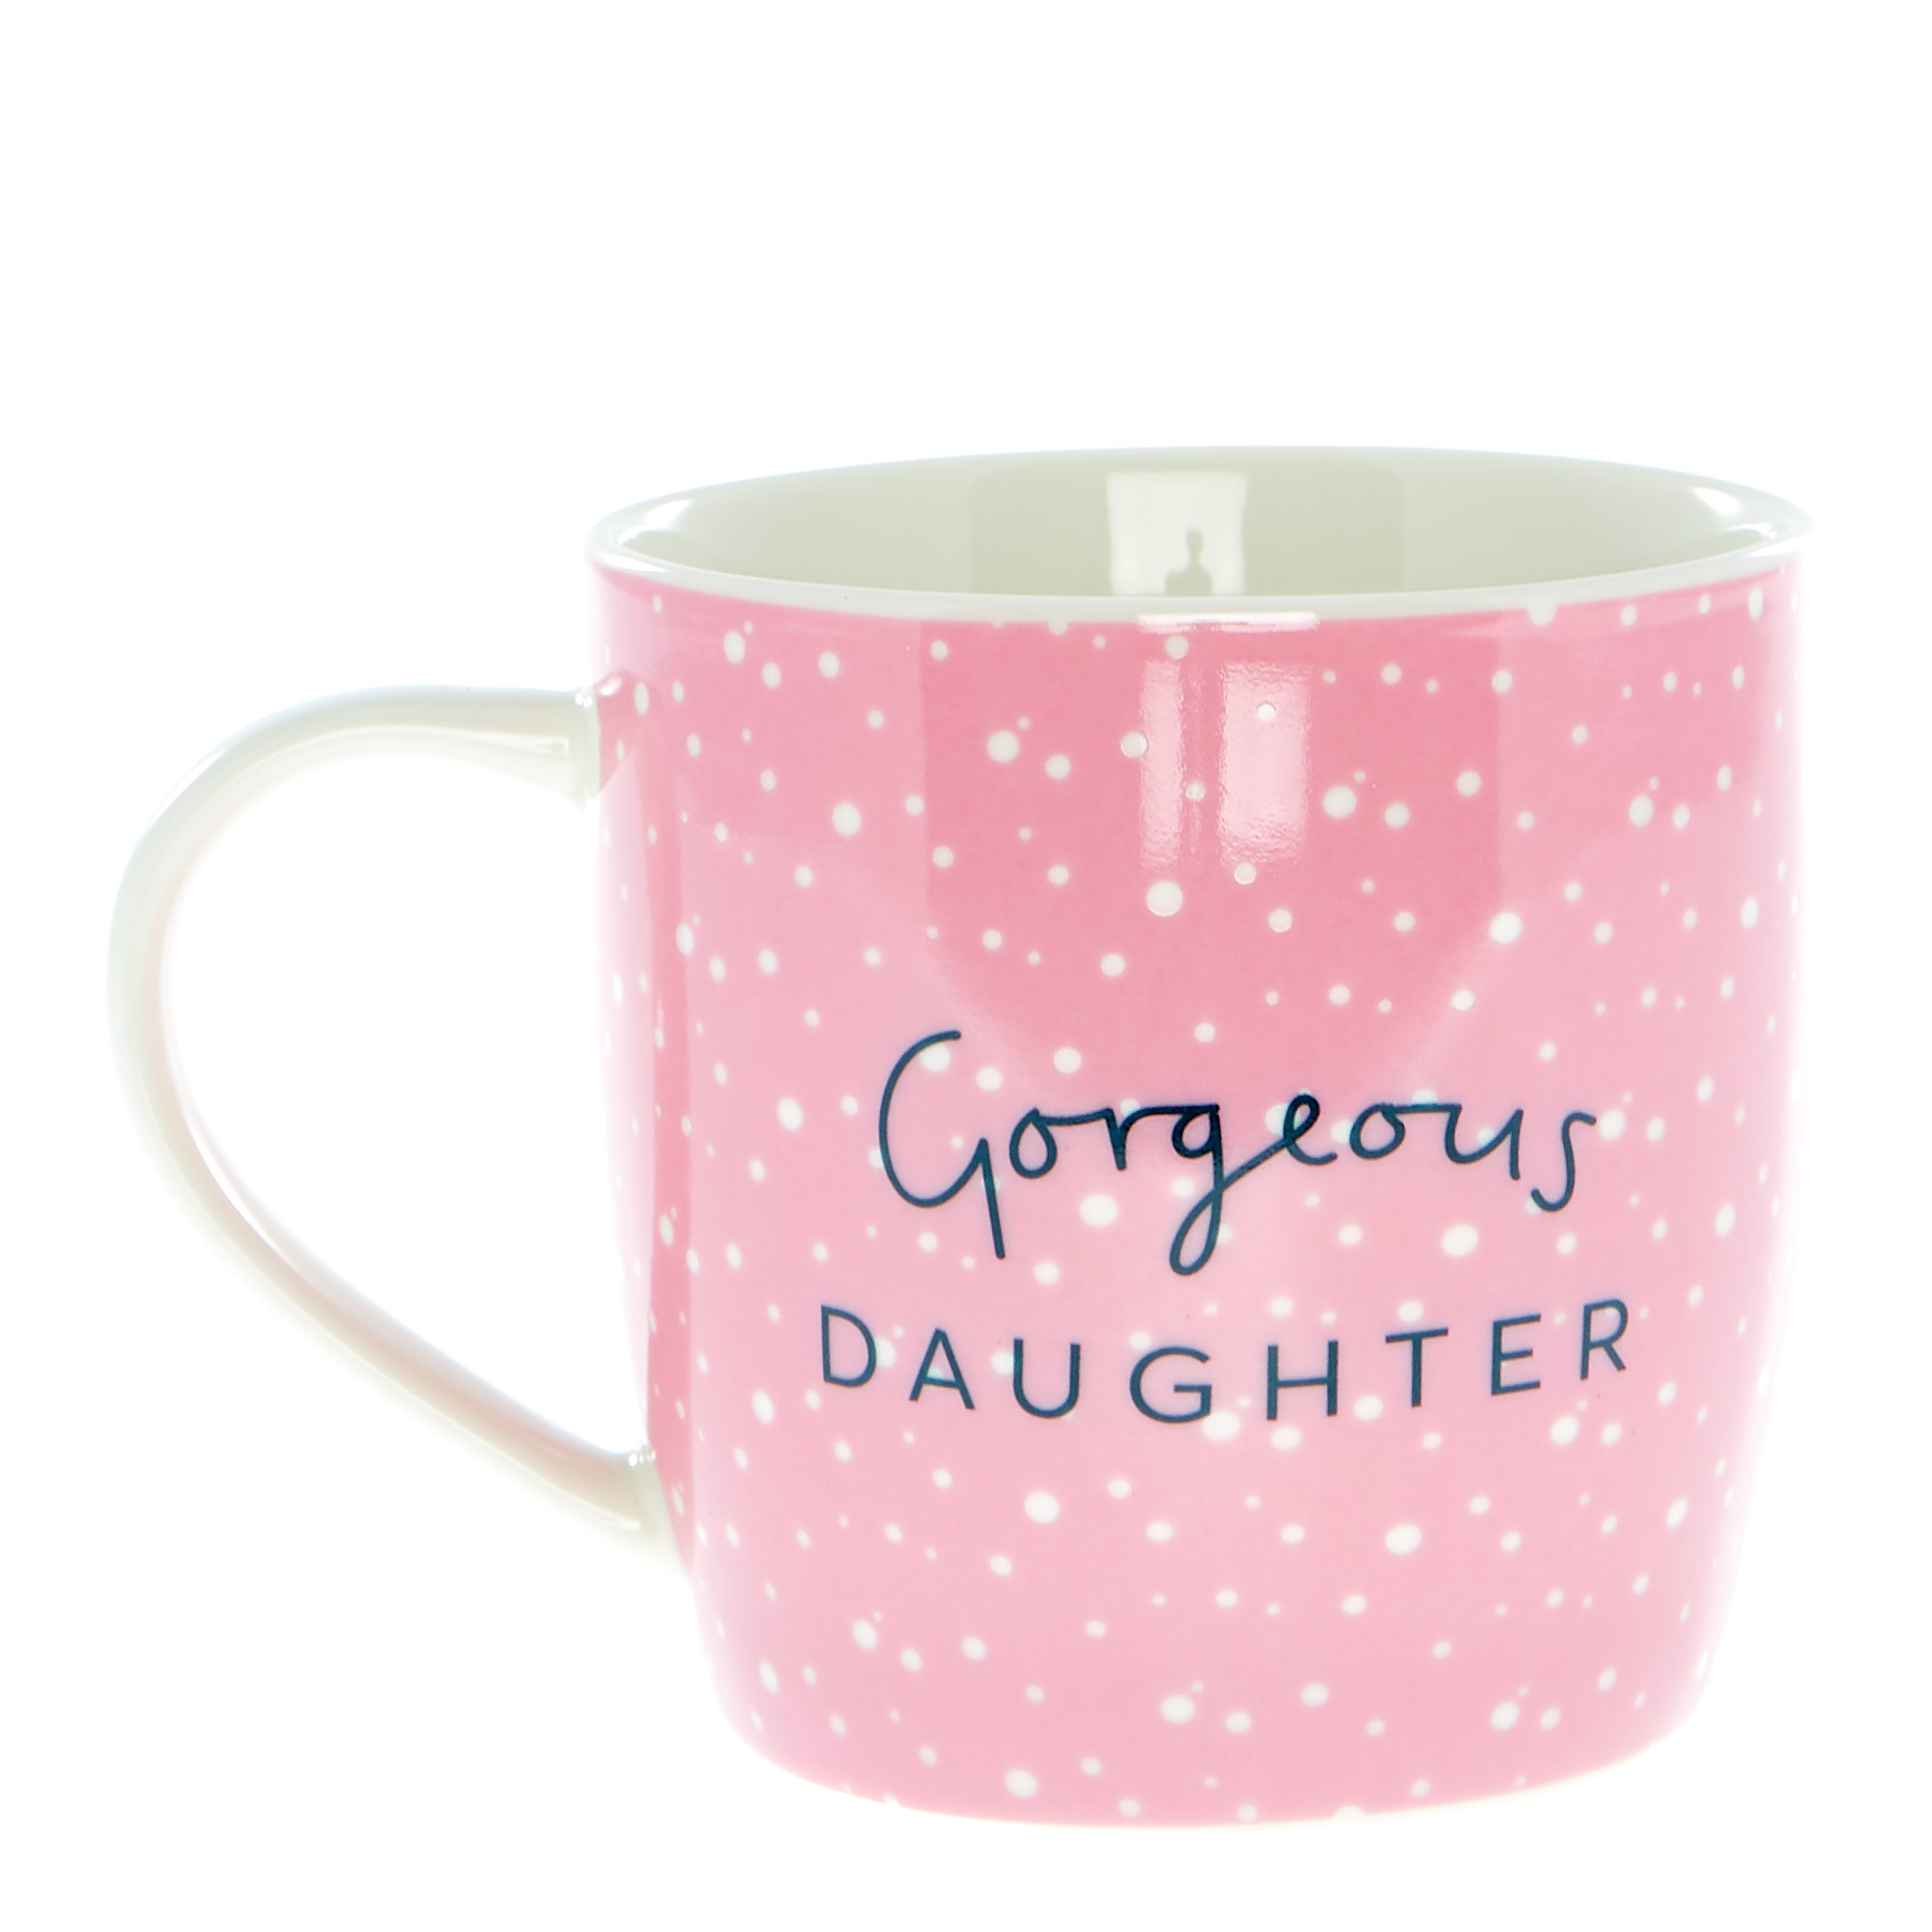 Gorgeous Daughter Mug